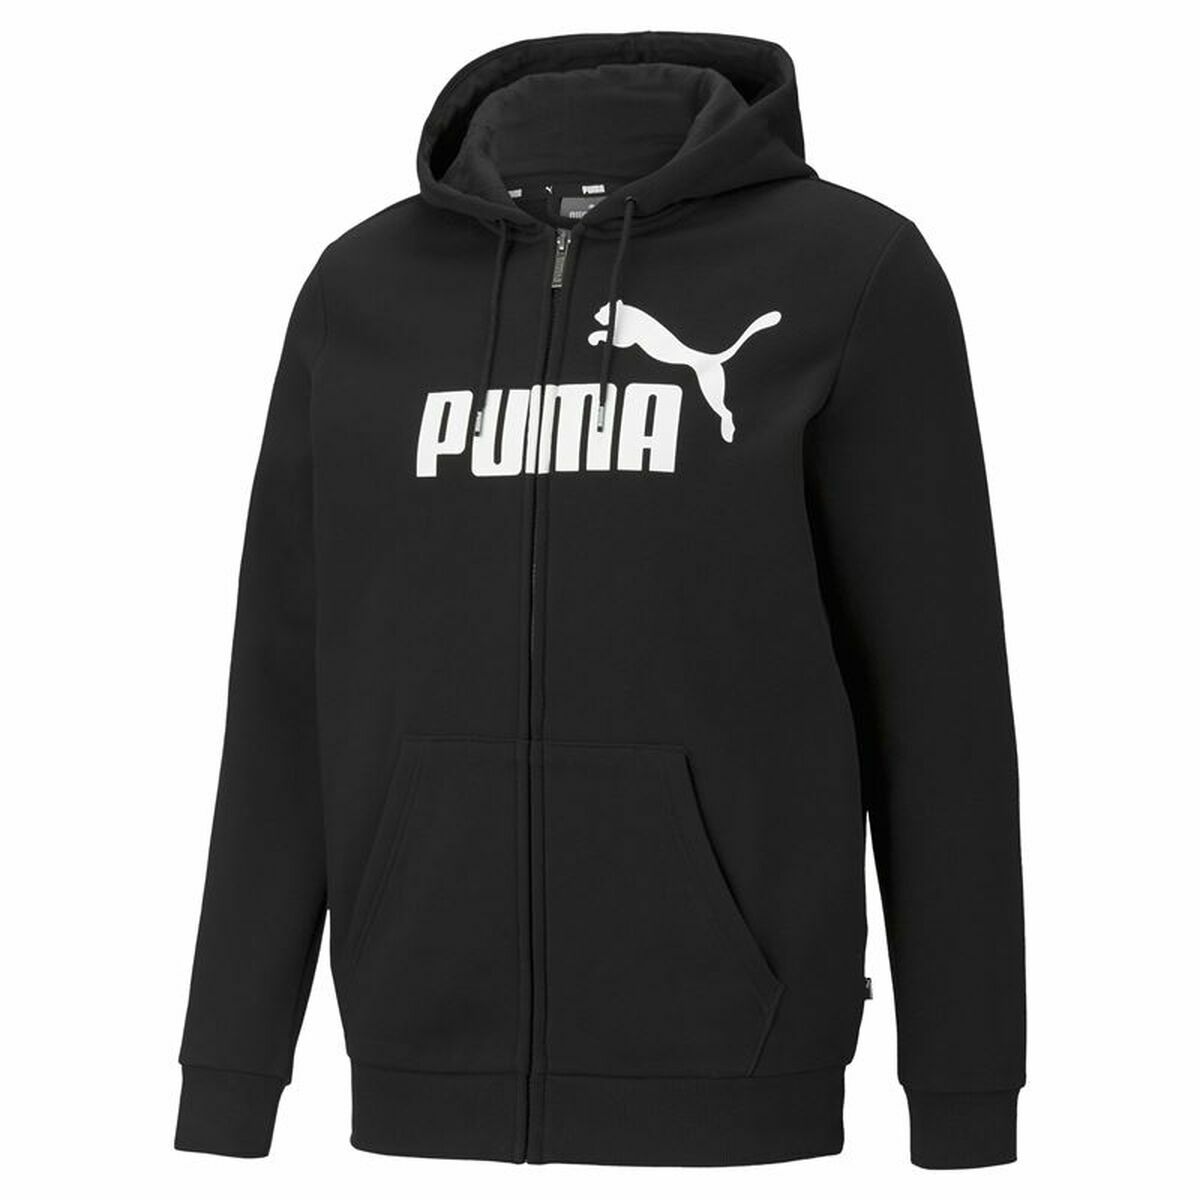 Kaufe Herren Sweater mit Kapuze Puma Essentials Big Logo Schwarz bei AWK Flagship um € 61.00